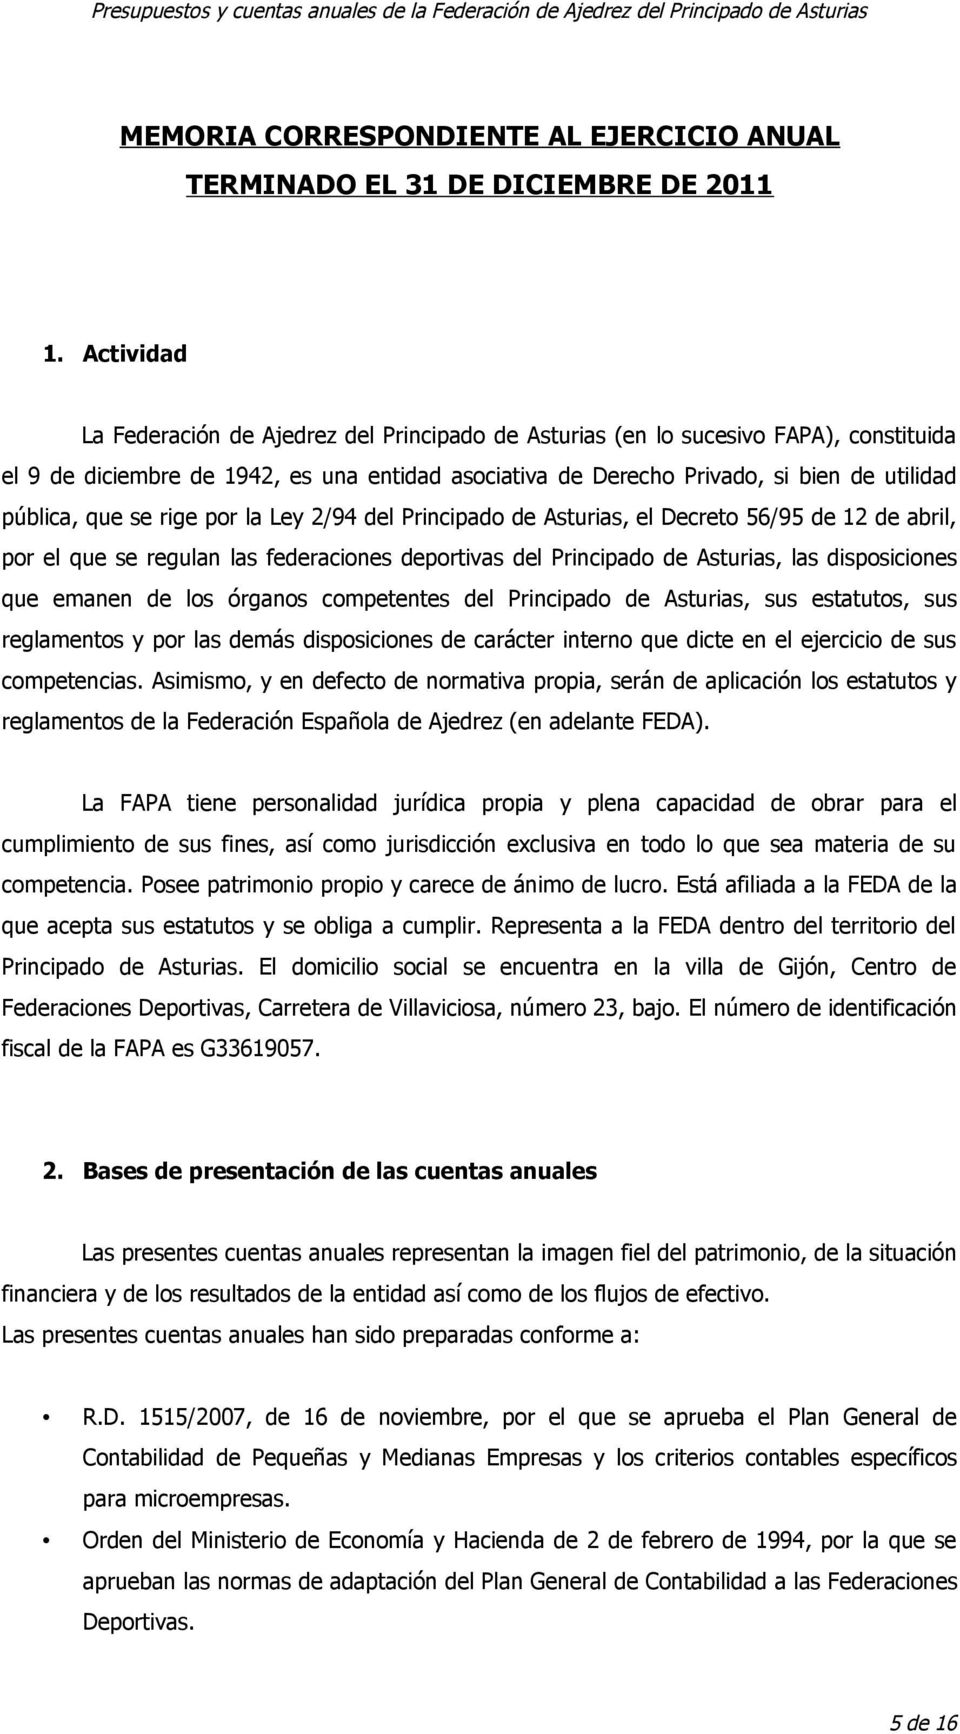 que se rige por la Ley 2/94 del Principado de Asturias, el Decreto 56/95 de 12 de abril, por el que se regulan las federaciones deportivas del Principado de Asturias, las disposiciones que emanen de